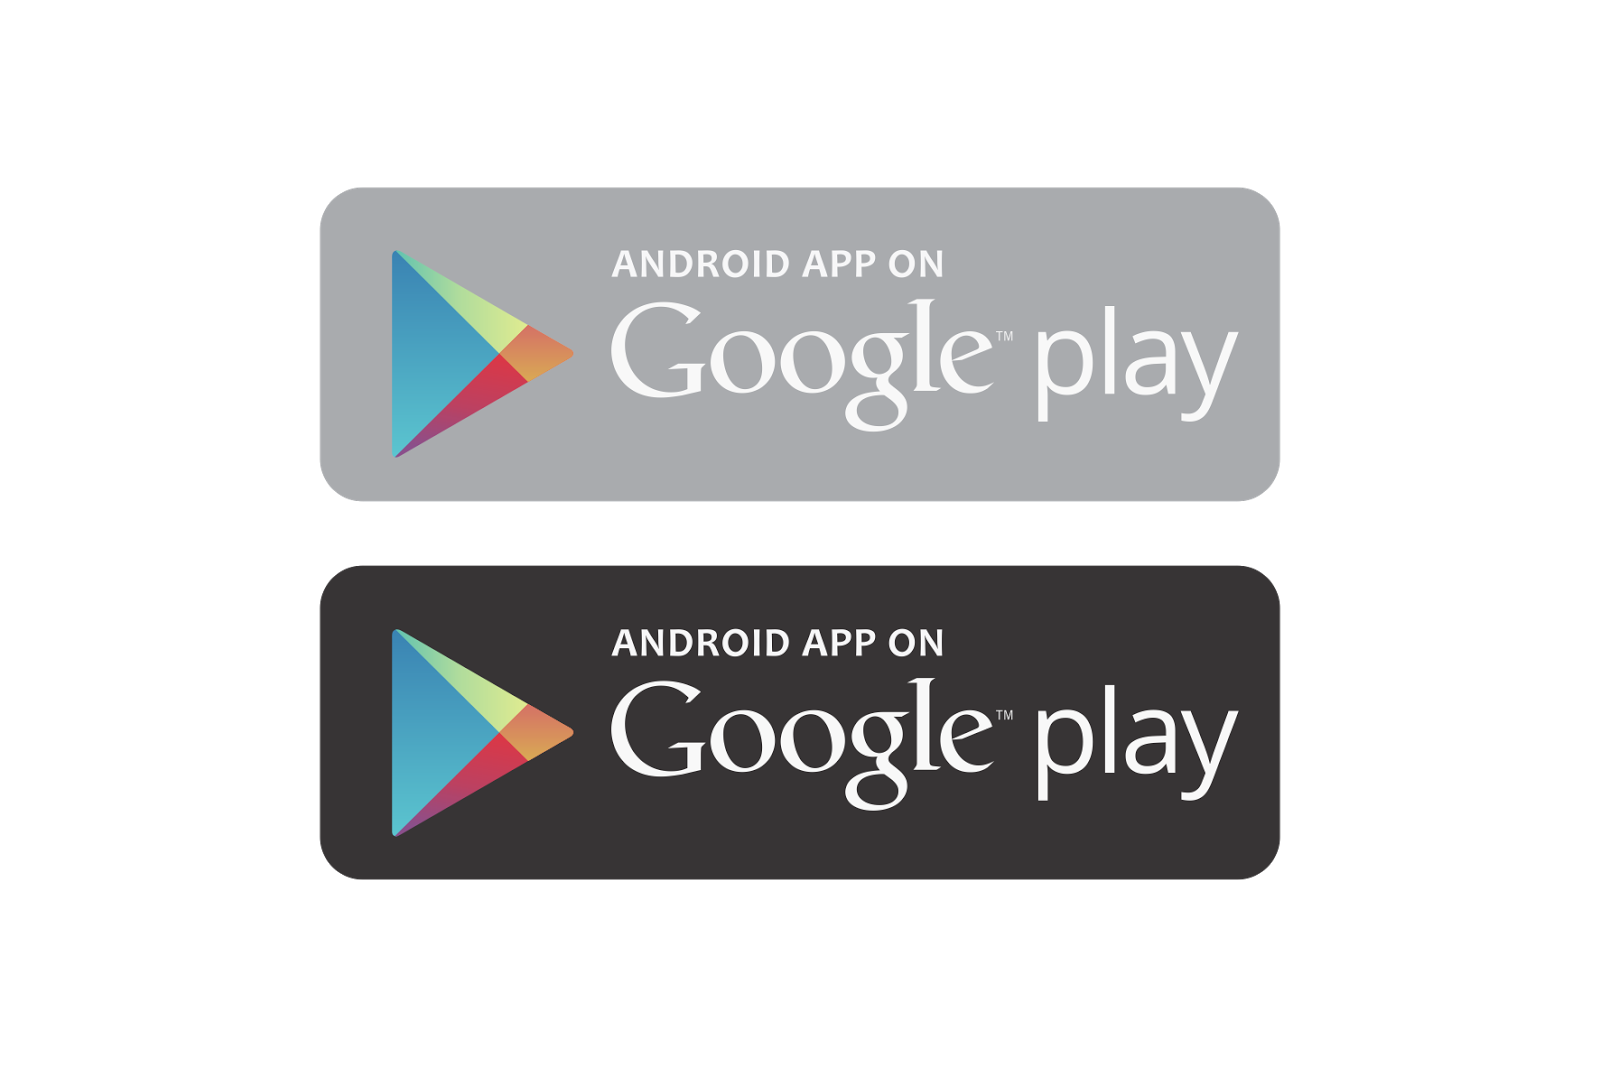 Кнопка плей маркет. Google Play. Логотип Google Play. Кнопка Play Market. Google Play Market логотип.